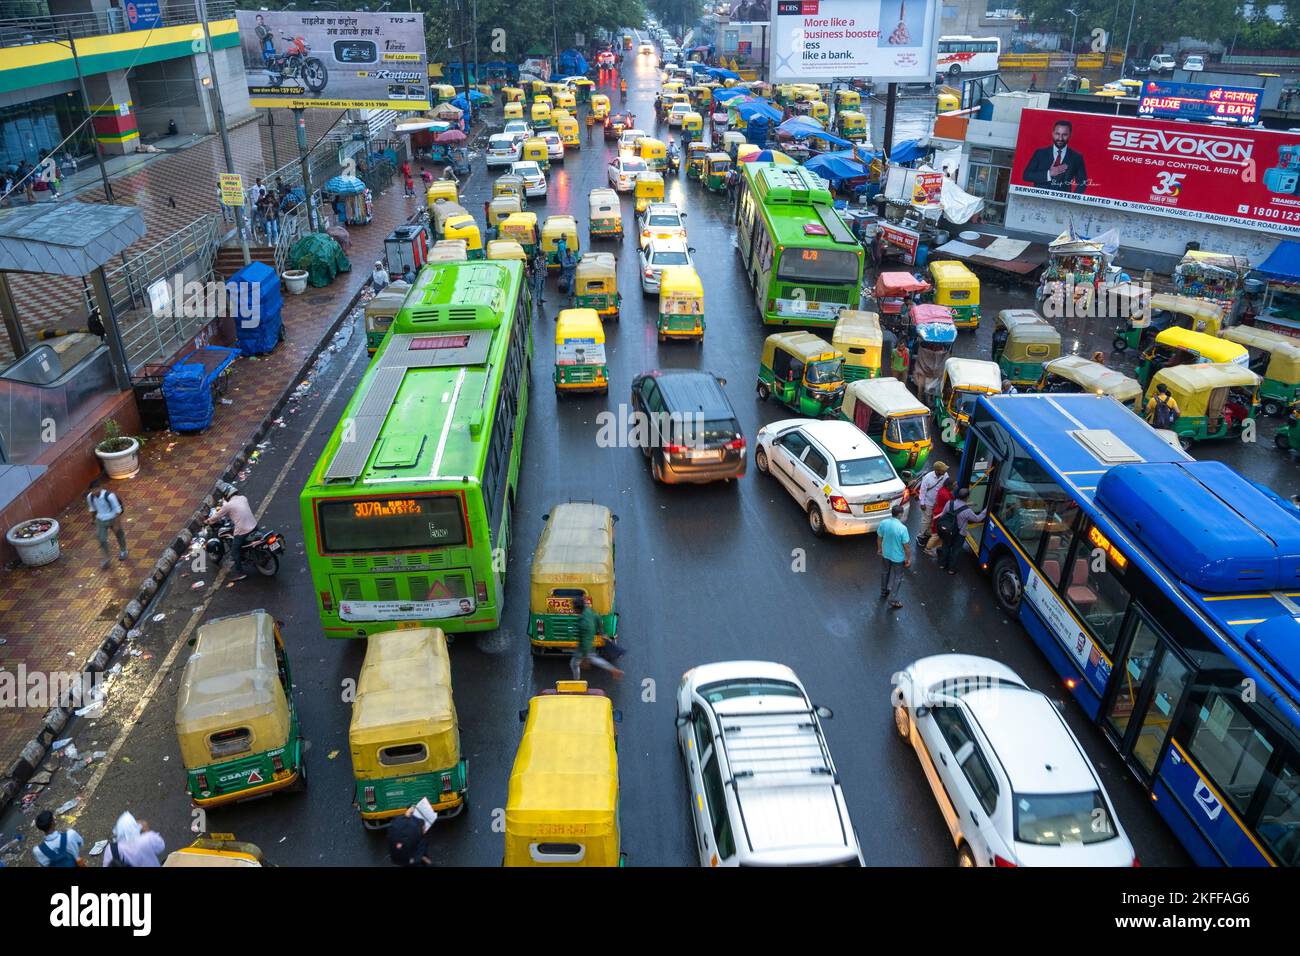 NEU-DELHI - SEPTEMBER 16: Straßenleben, Stau mit Autos, öffentliche Verkehrsmittel, Auto-Rikschas auf einer Straße in der Nähe des Bahnhofs von Neu-Delhi am Septemb Stockfoto